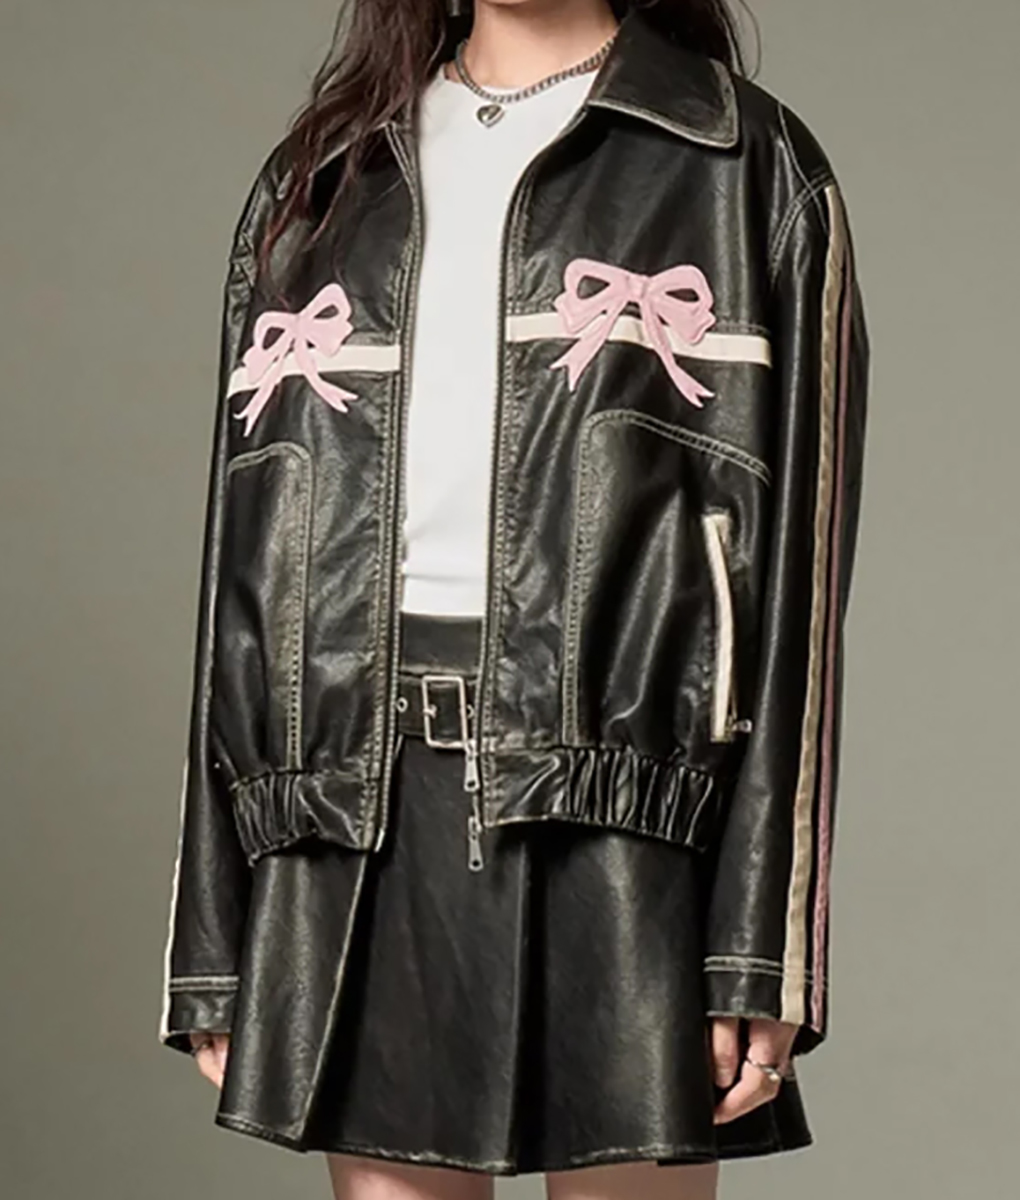 Marina Black Leather Jacket